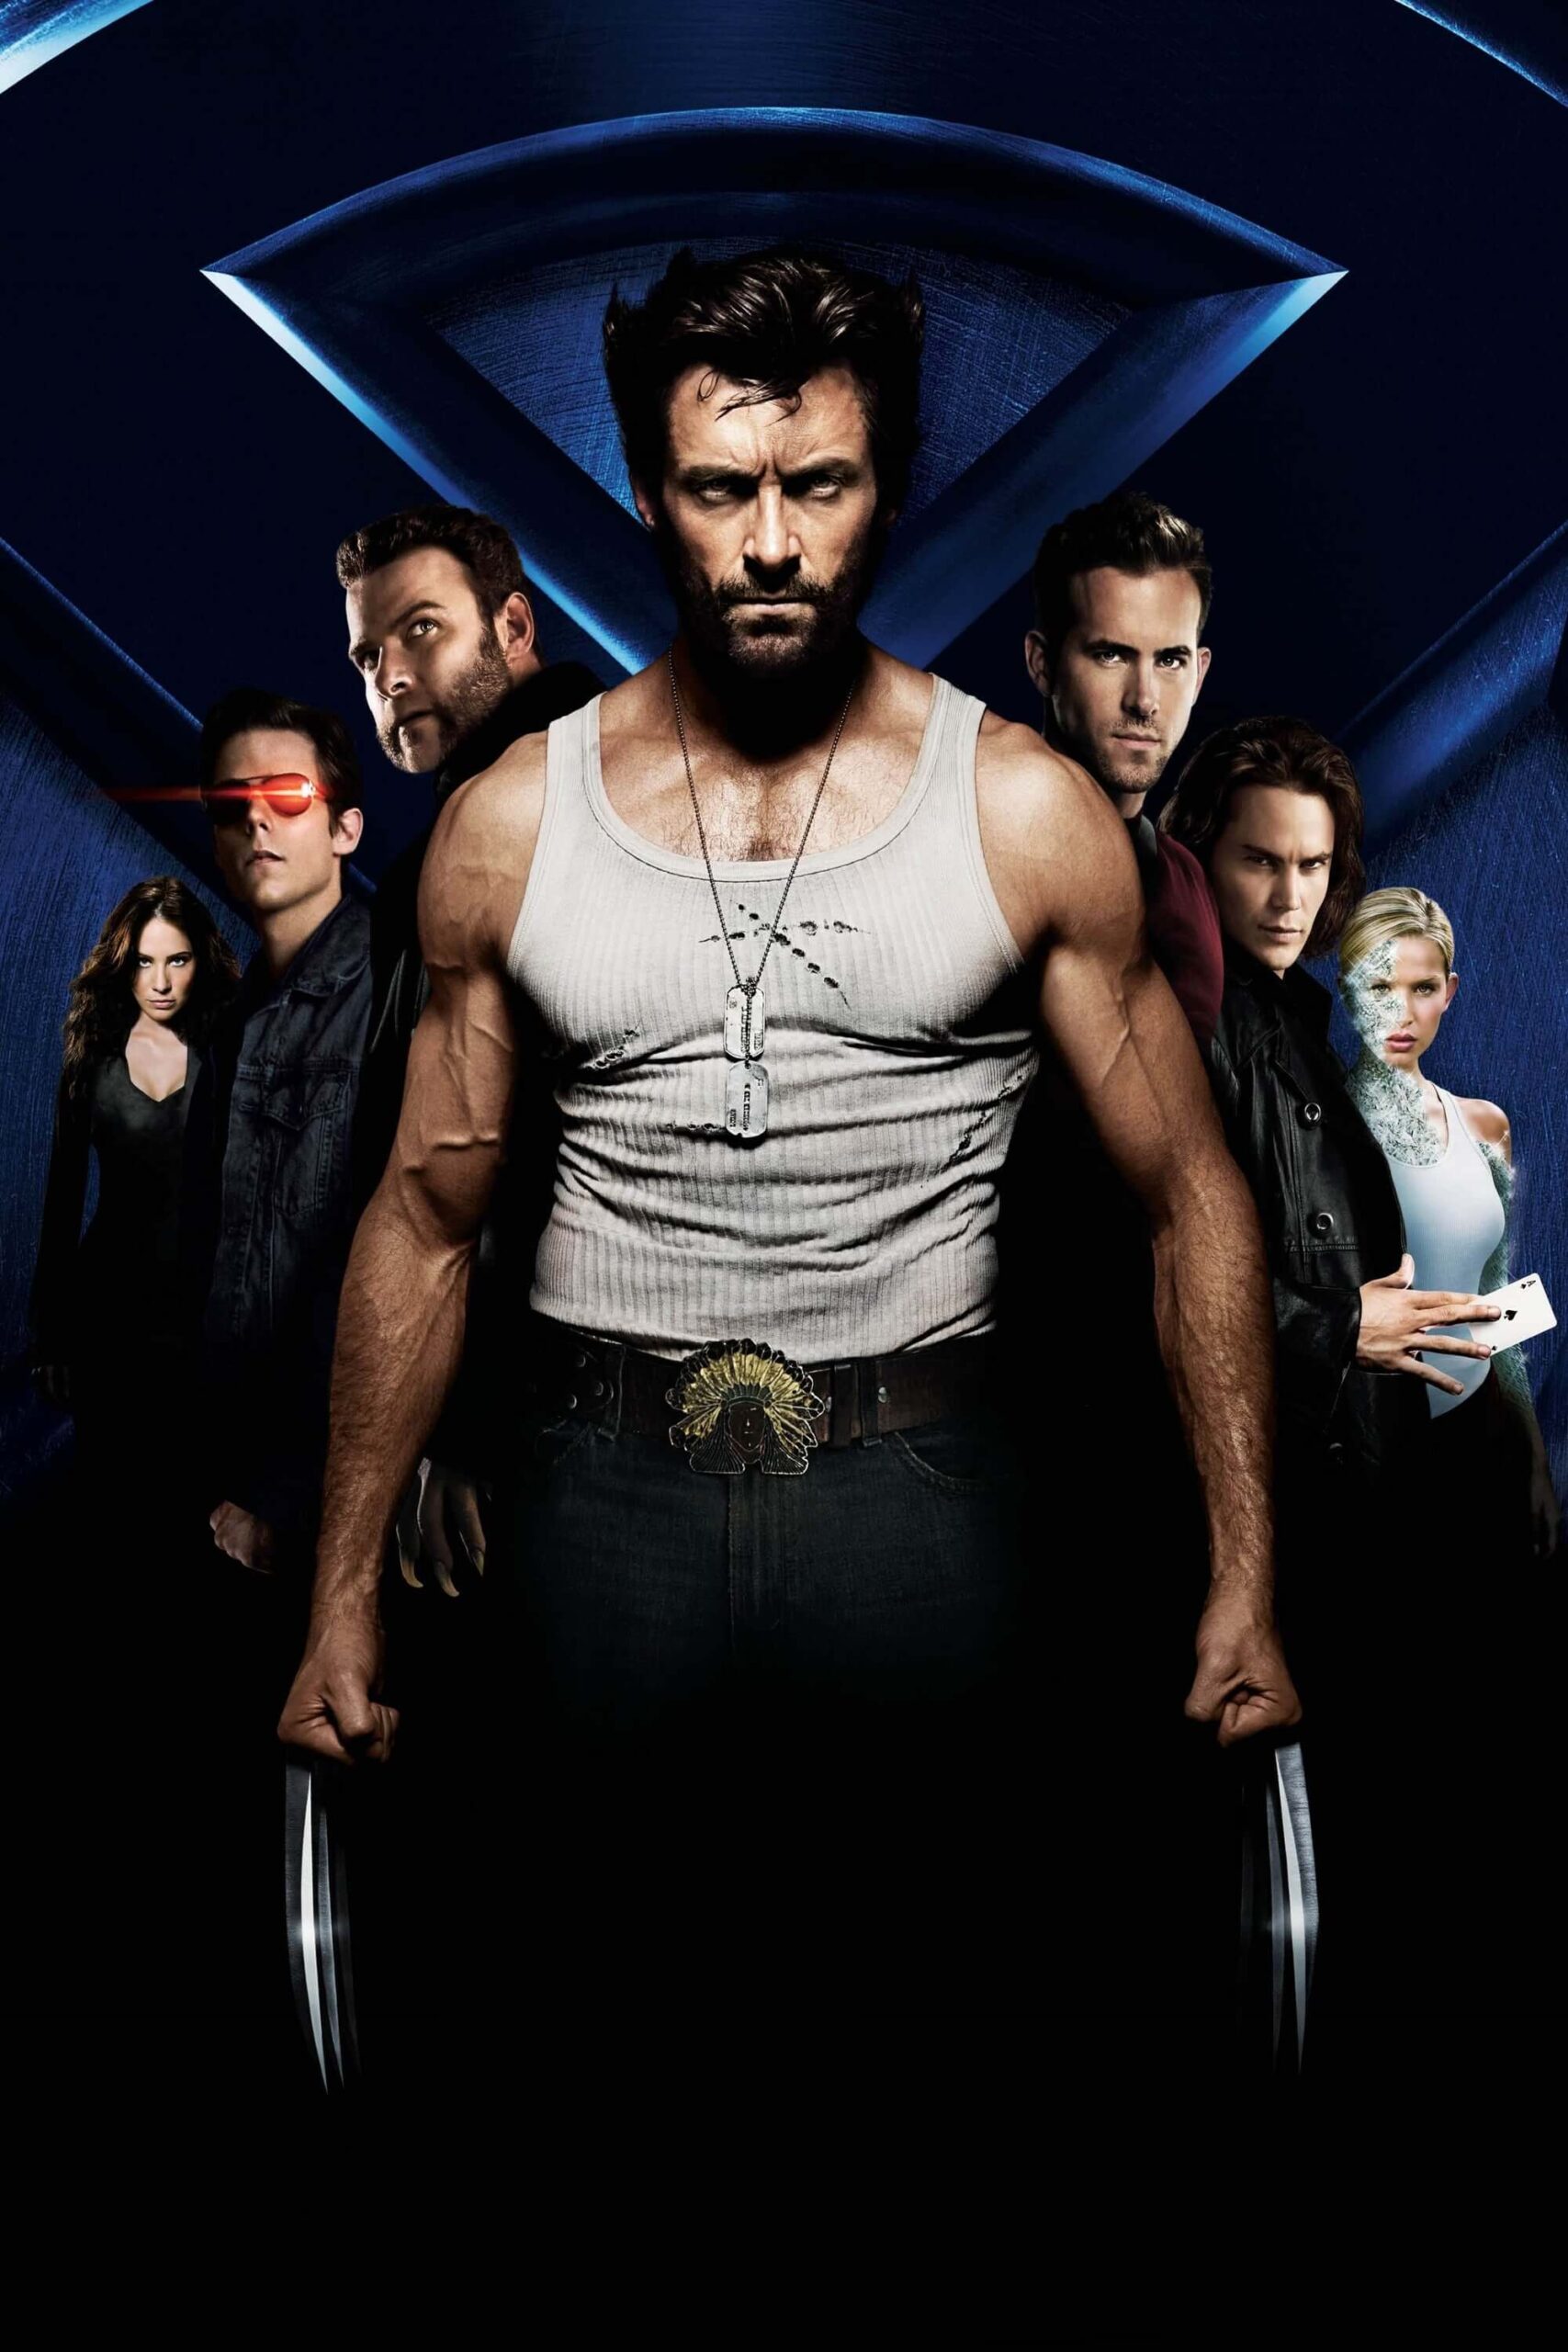 خاستگاه مردان ایکس: ولورین (X-Men Origins: Wolverine)